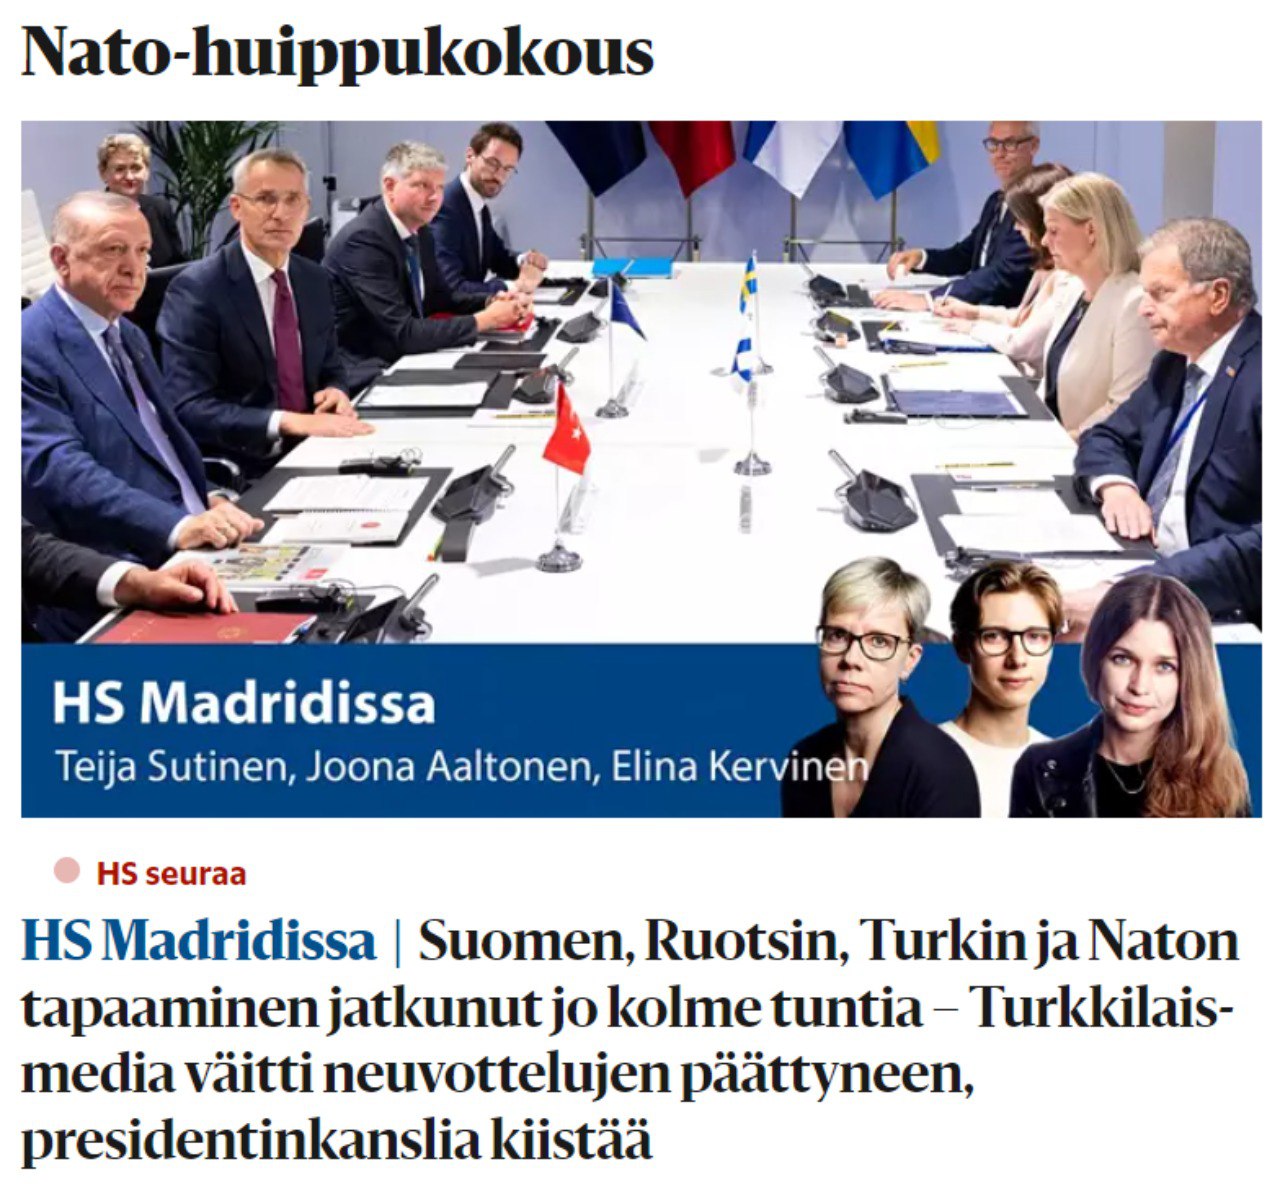 Скриншот с сайта Helsingin Sanomat